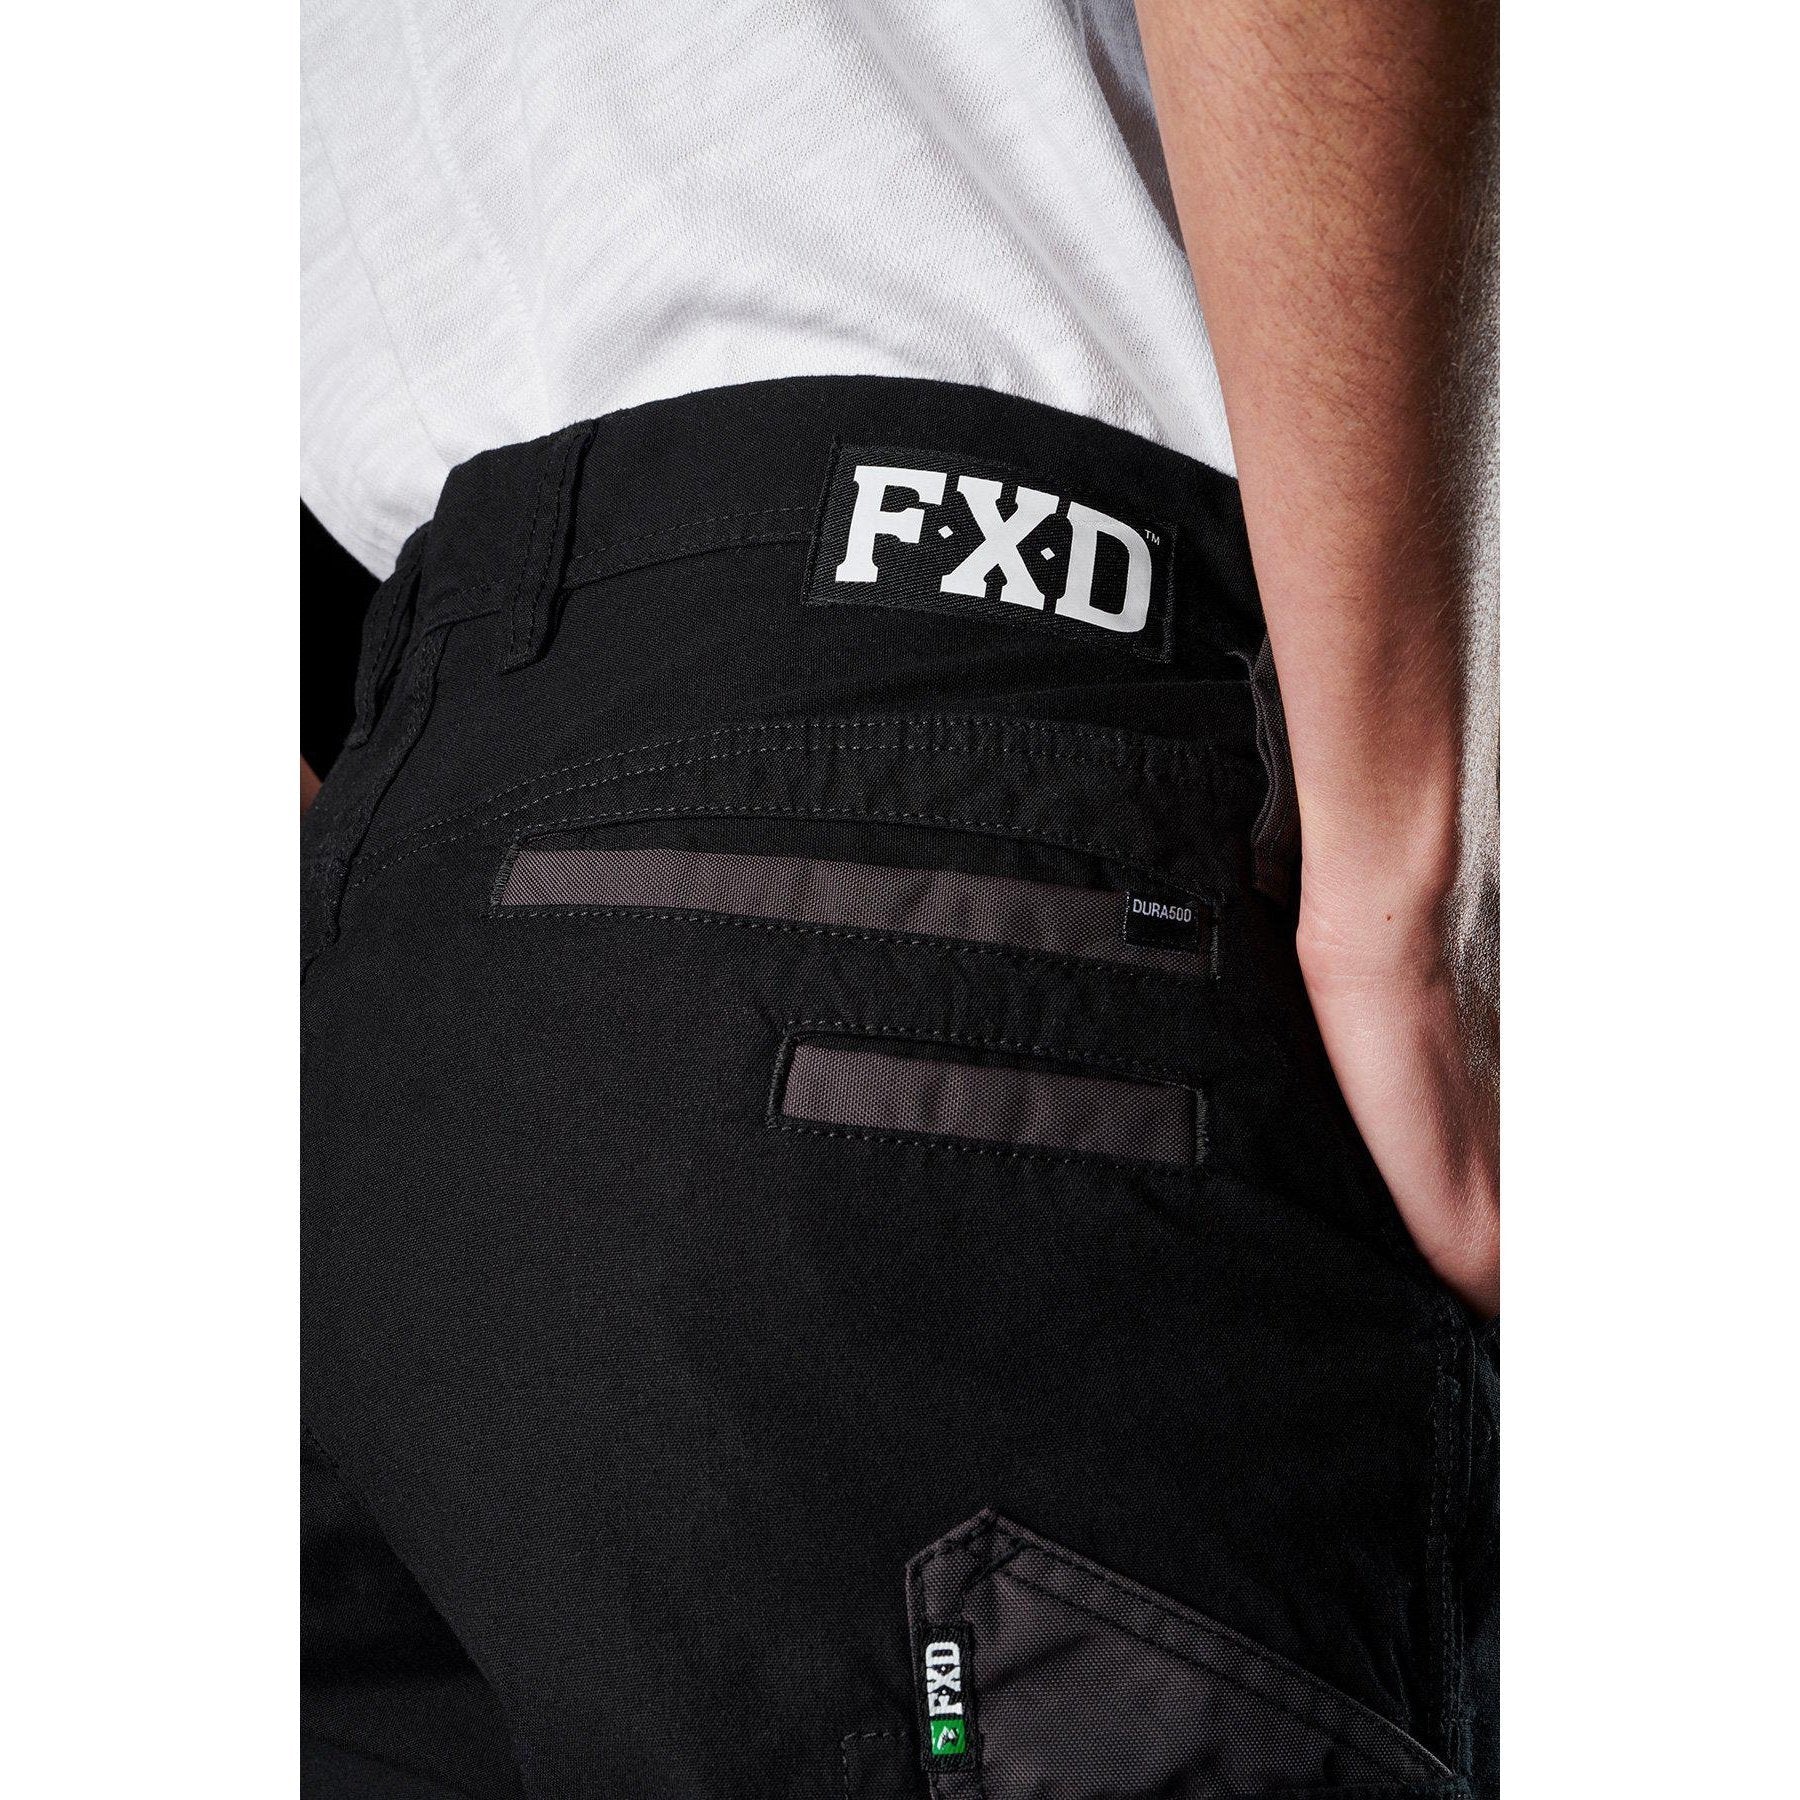 FXD WP-3W Ladies Stretch Work Pants (FX11906200). Khaki. Size 14